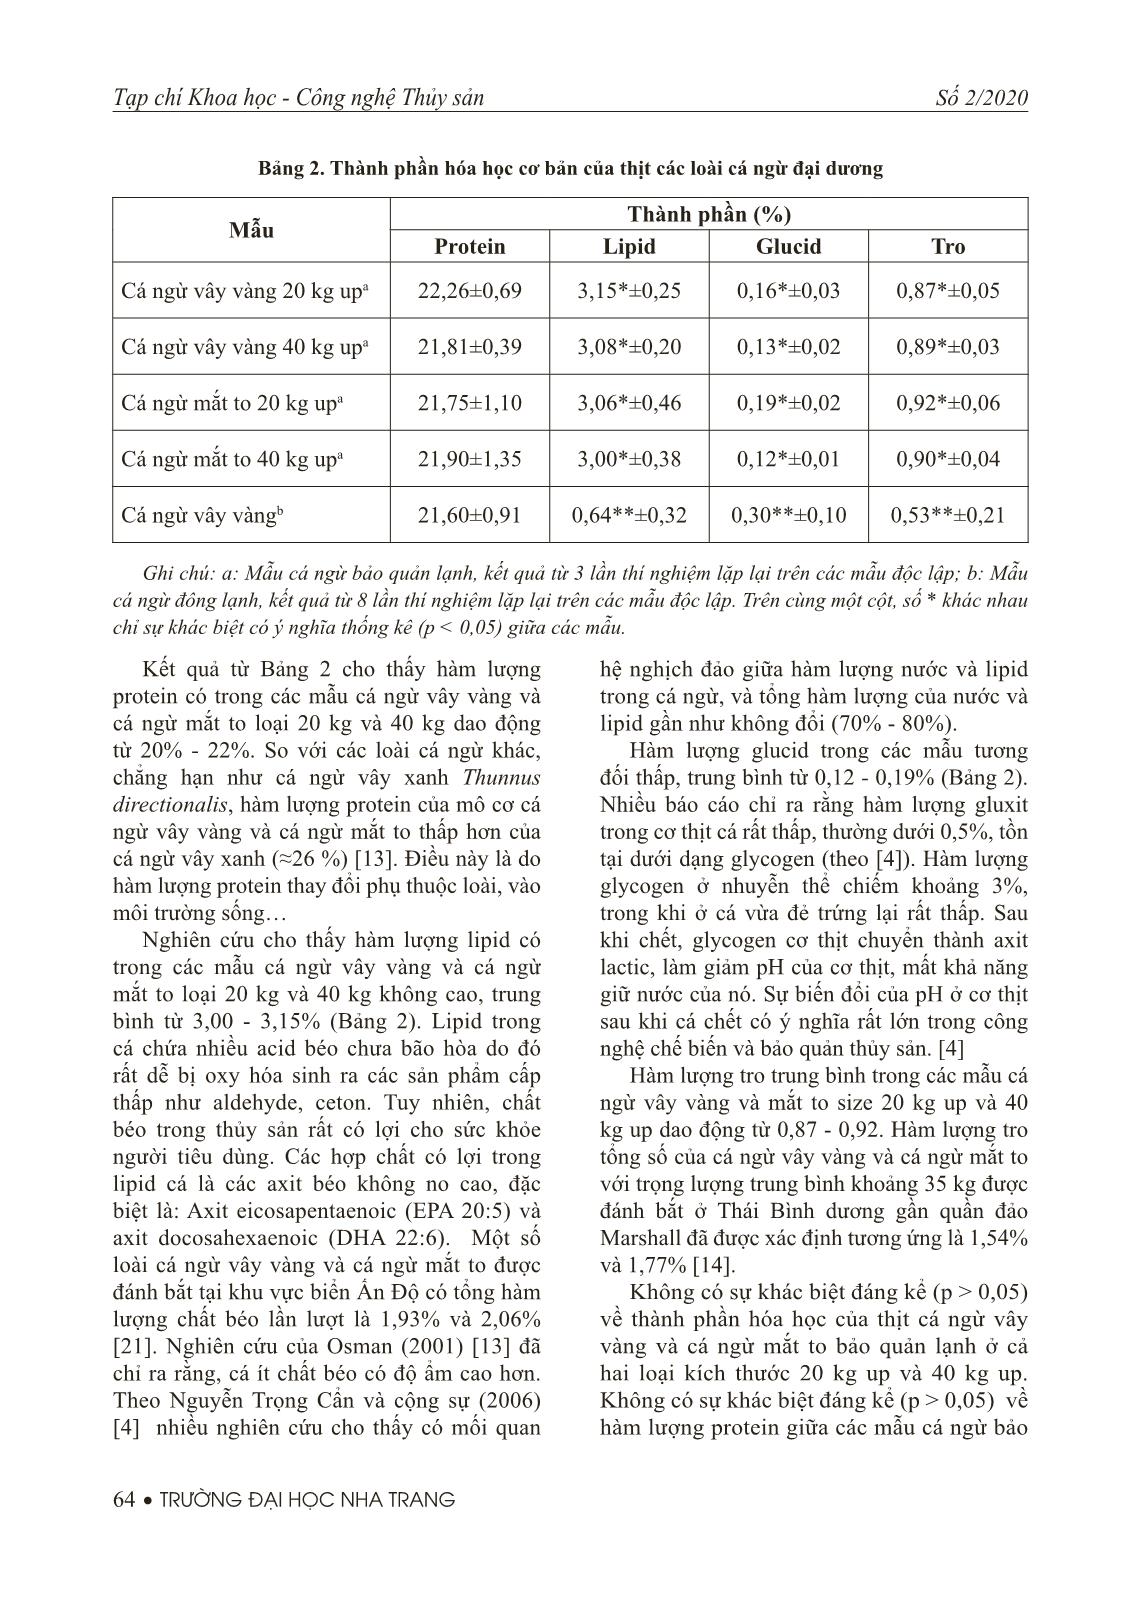 Thành phần hoá học cơ bản và một số tính chất vật lý của cá ngừ đại dương đánh bắt tại Việt Nam trang 6